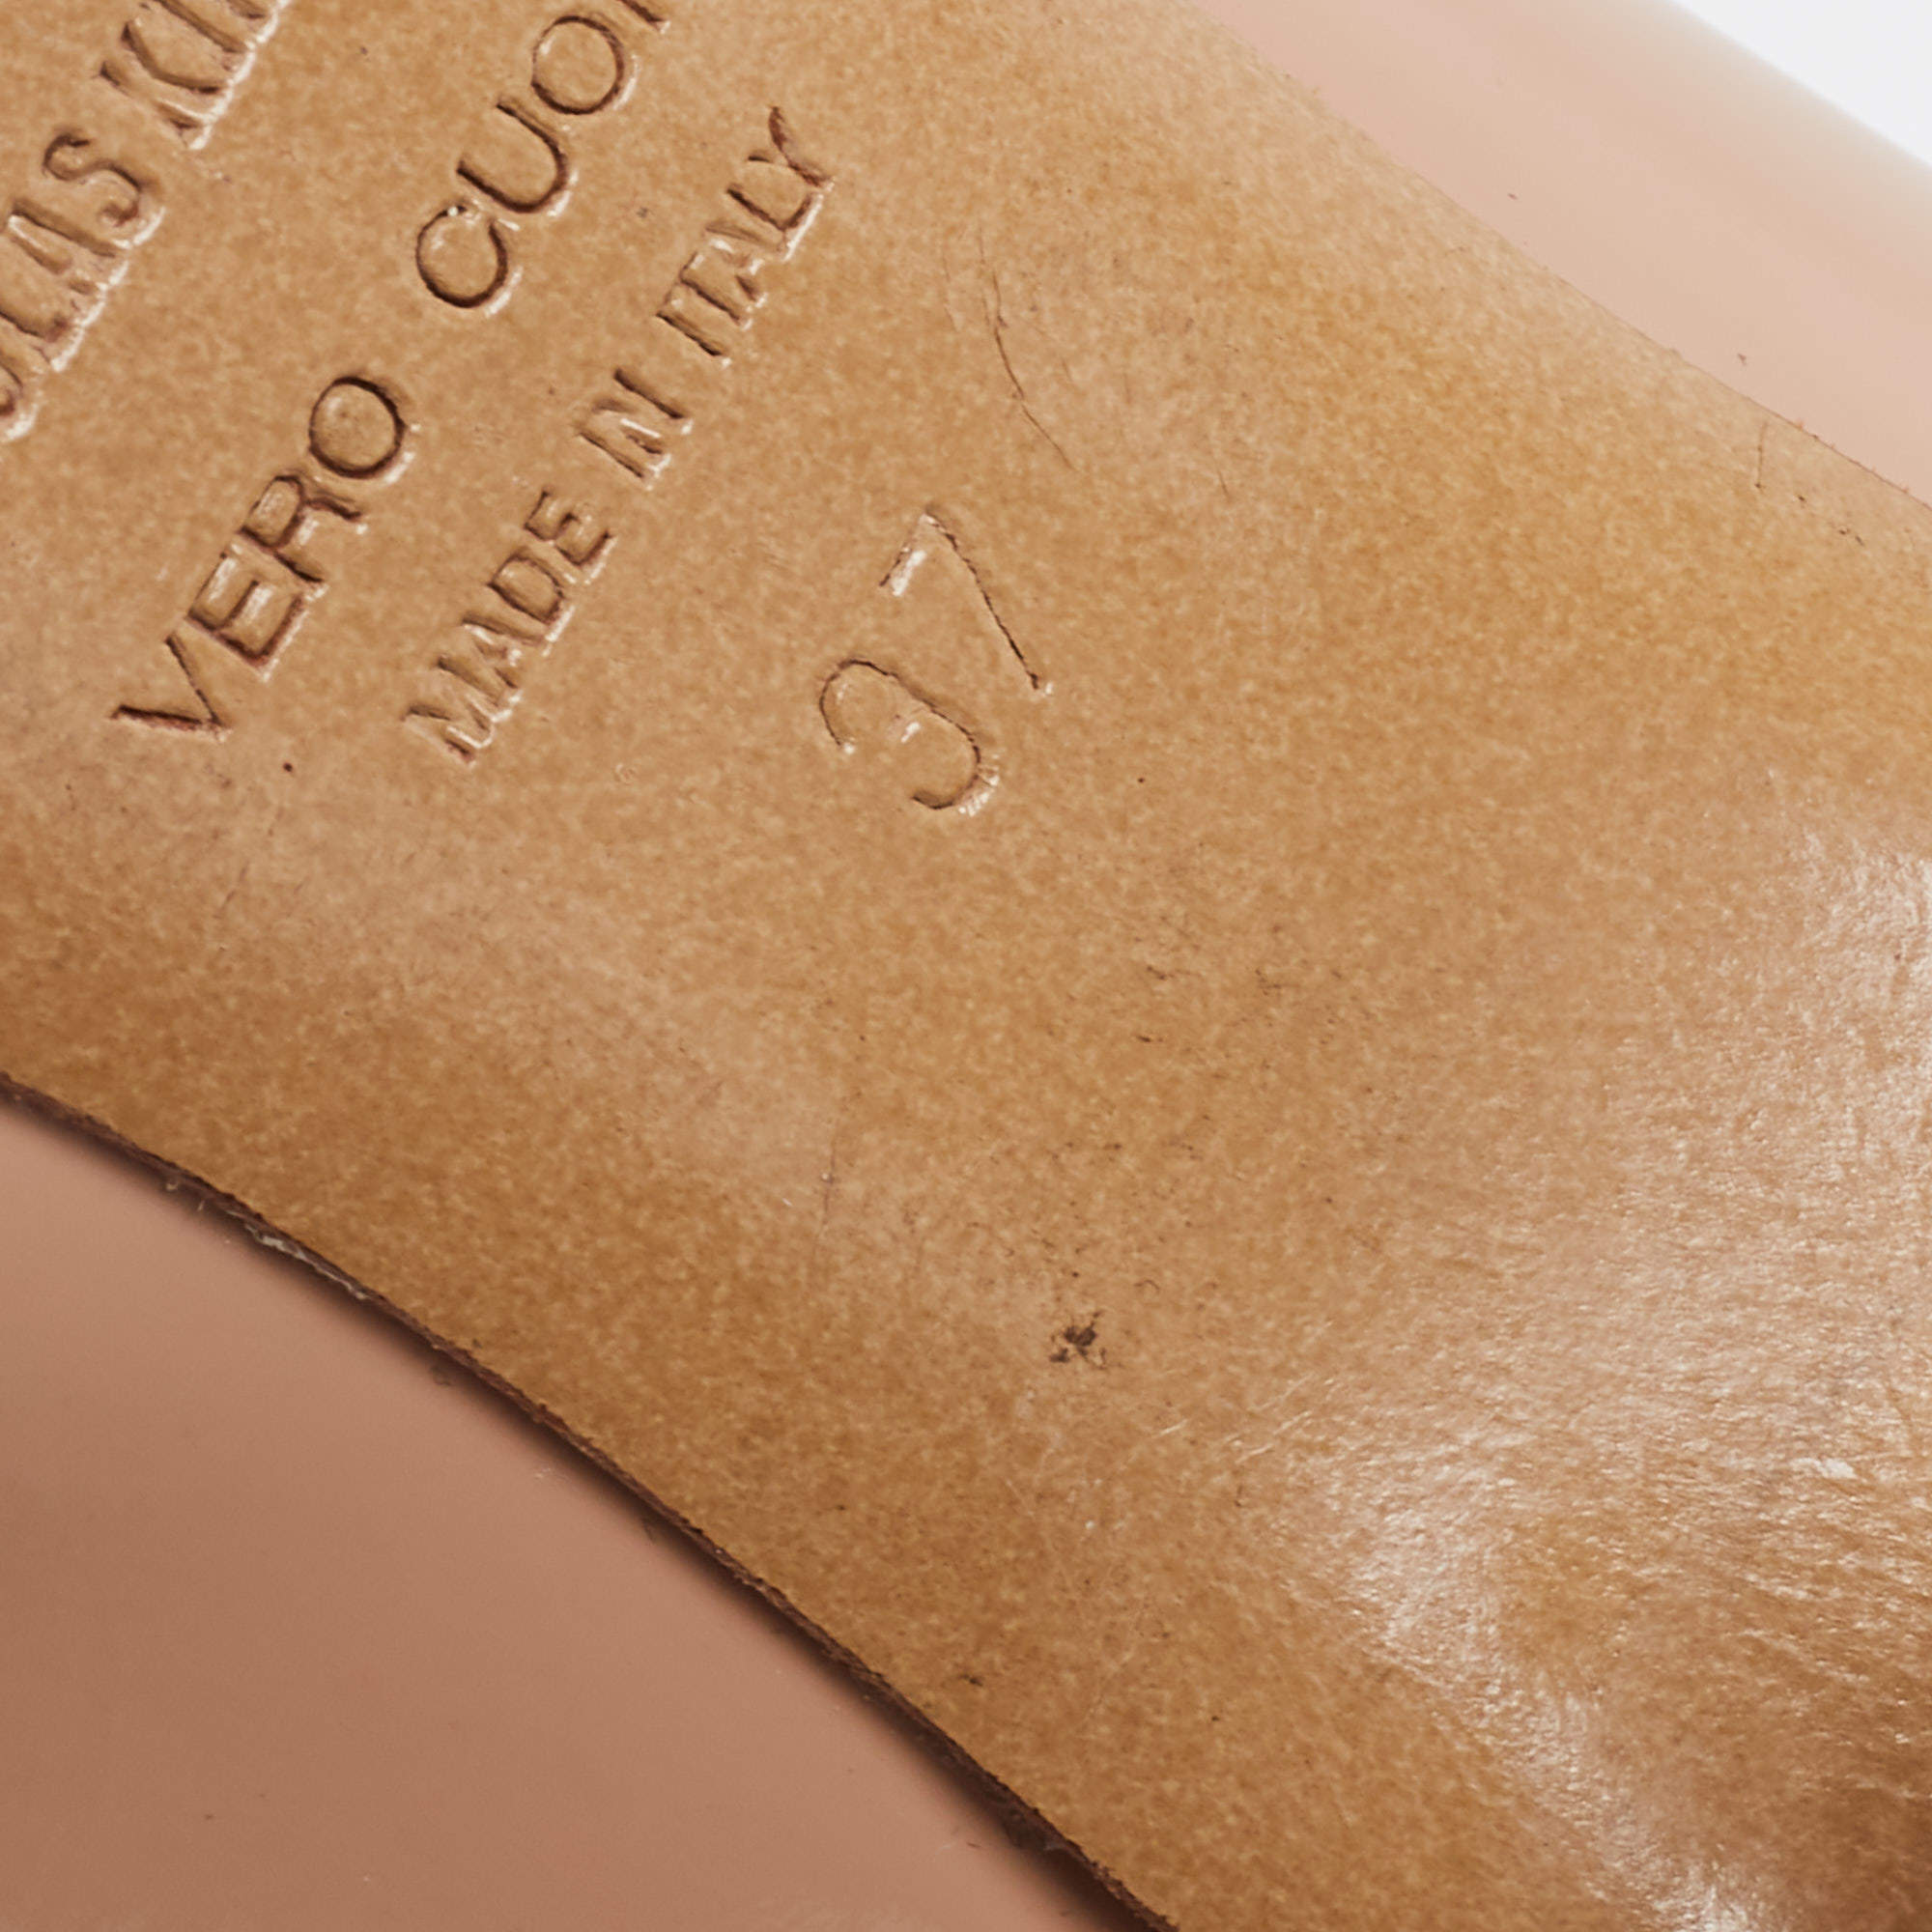 Nicholas Kirkwood Beige Patent Leather Pointed Toe Block Heel Pumps Size 37  Nicholas Kirkwood | The Luxury Closet